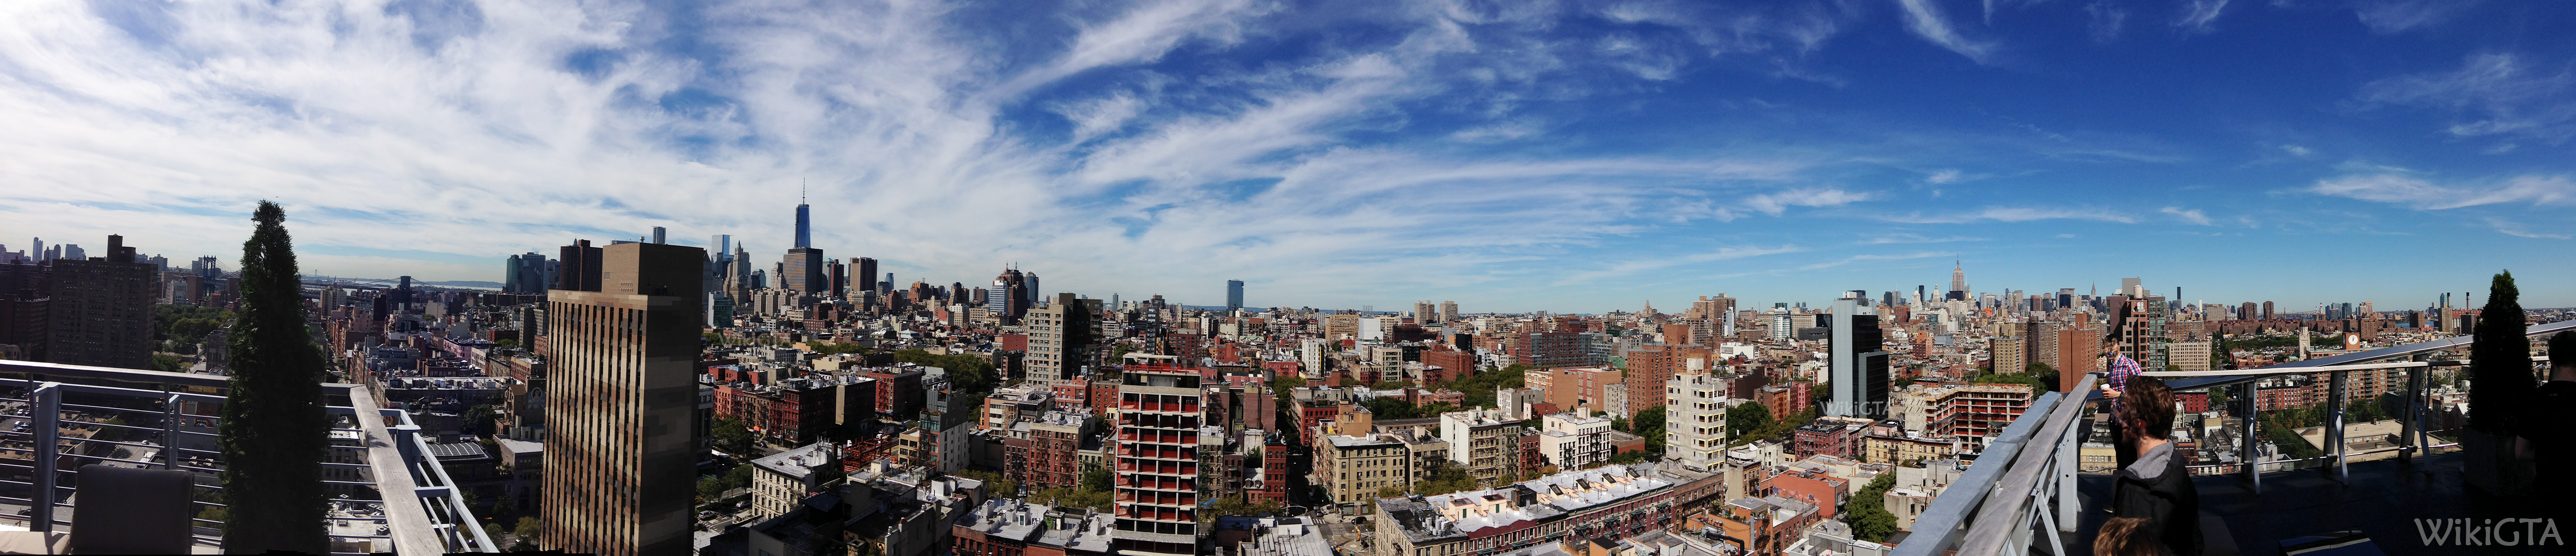 New York is in het echt vele malen groter dan Liberty City. Toch herken je direct de overeenkomst in gebouwen. Panorama geschoten vanaf Hotel on Rivington